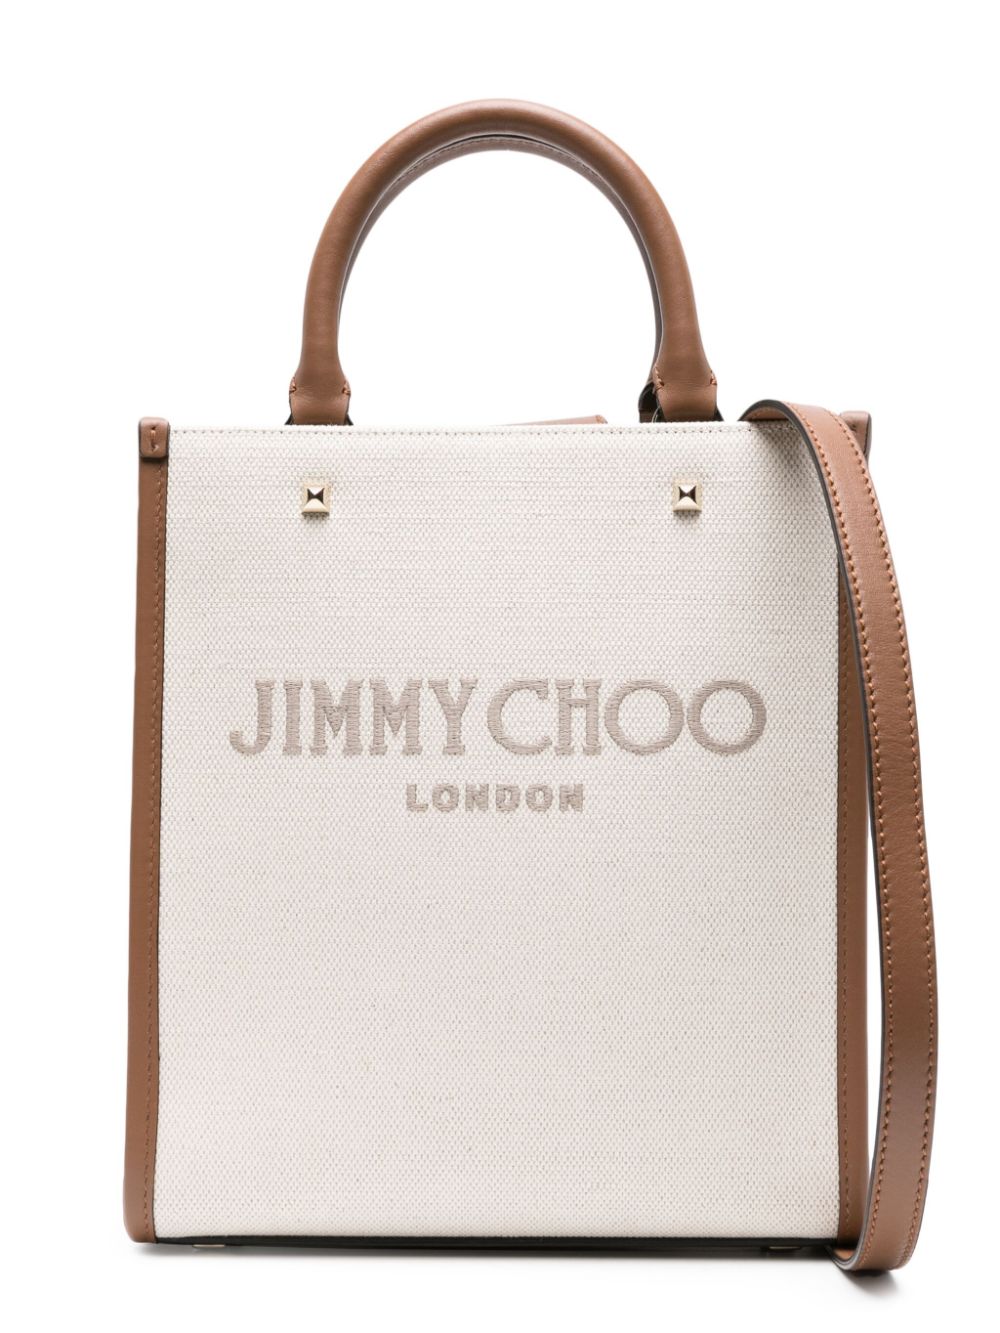 JIMMY CHOO Beige Avenue Tote Handbag for Women